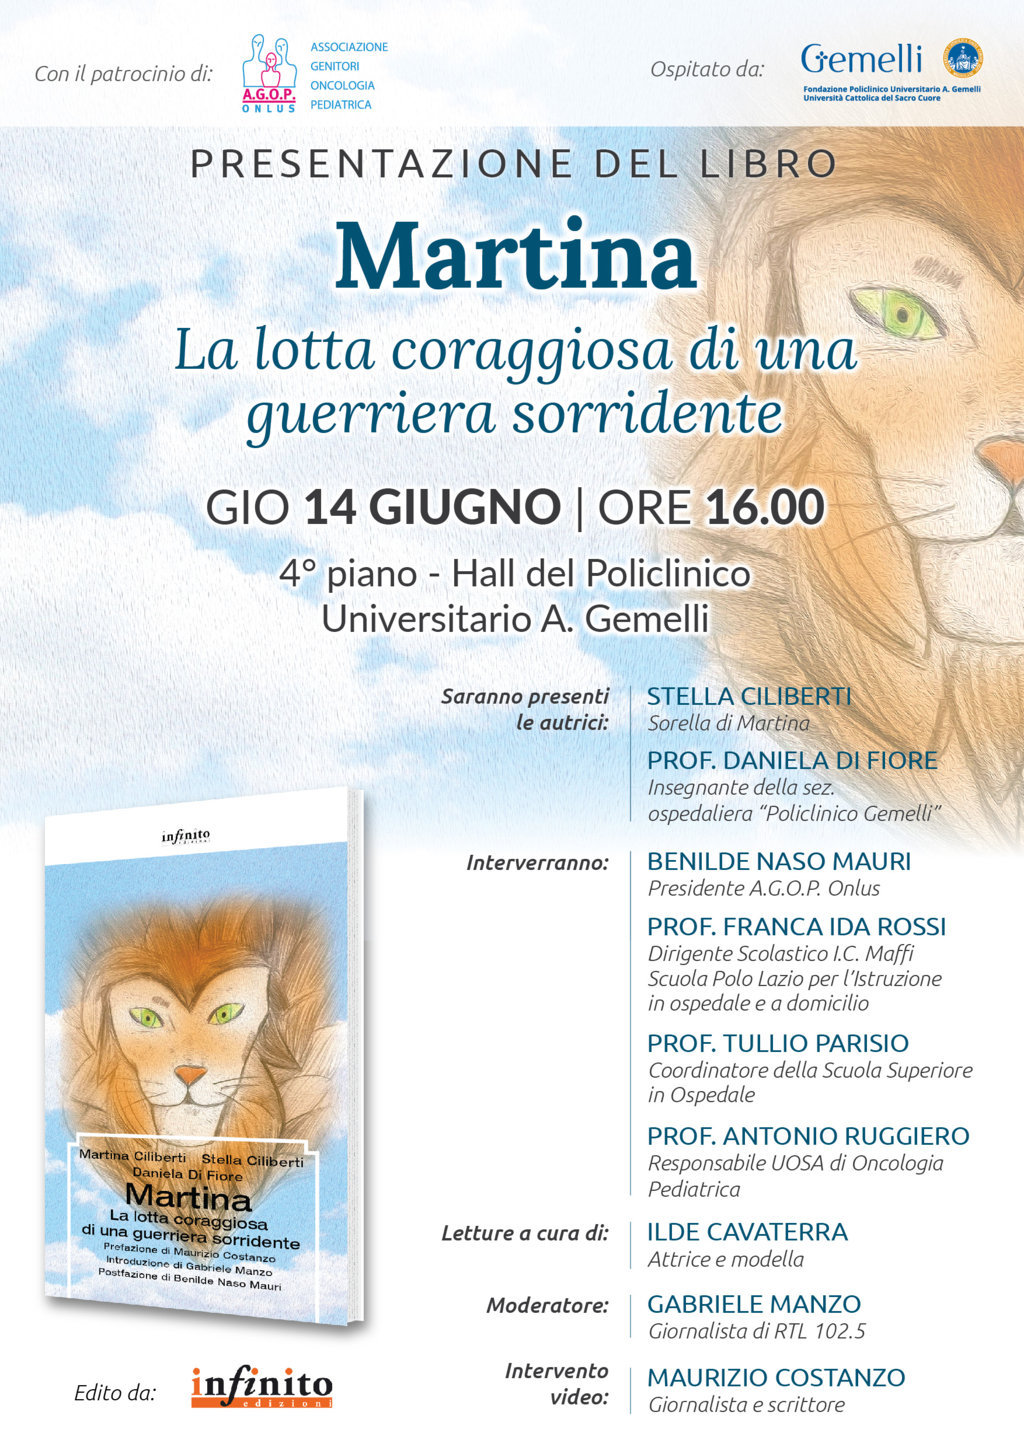 Presentazione del libro “Martina”